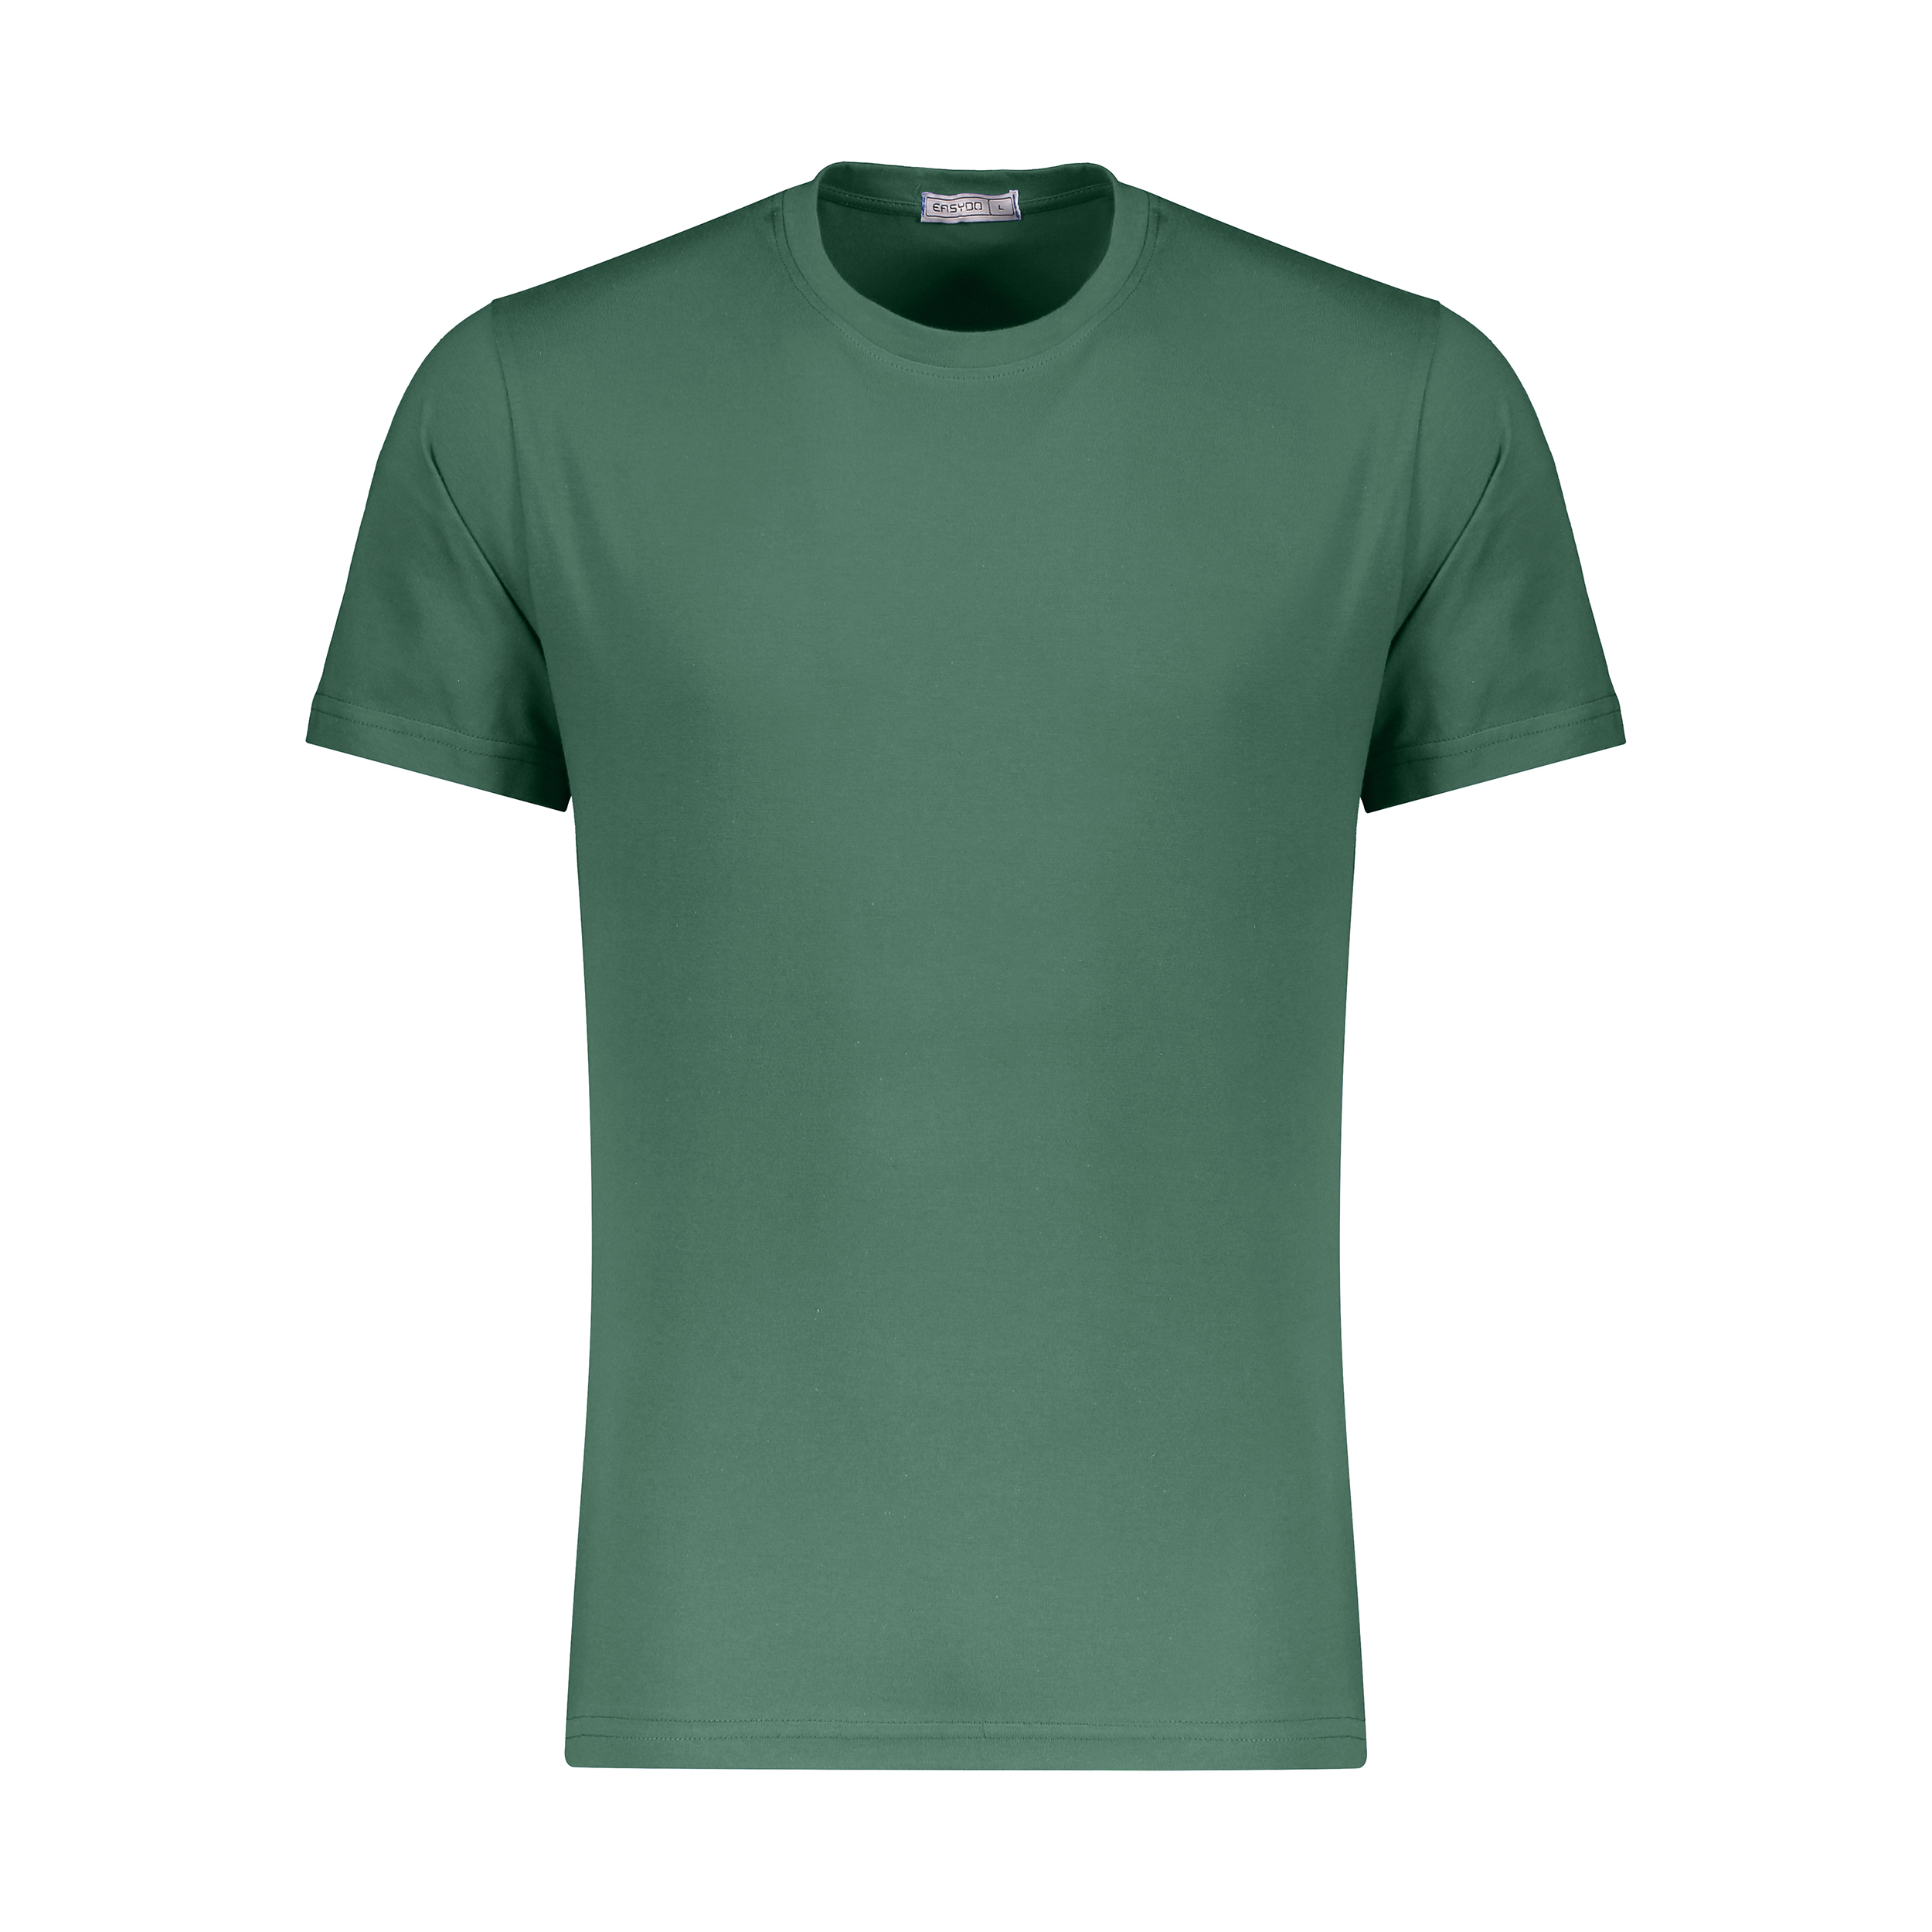 نکته خرید - قیمت روز تی شرت مردانه ایزی دو مدل 218114941 خرید